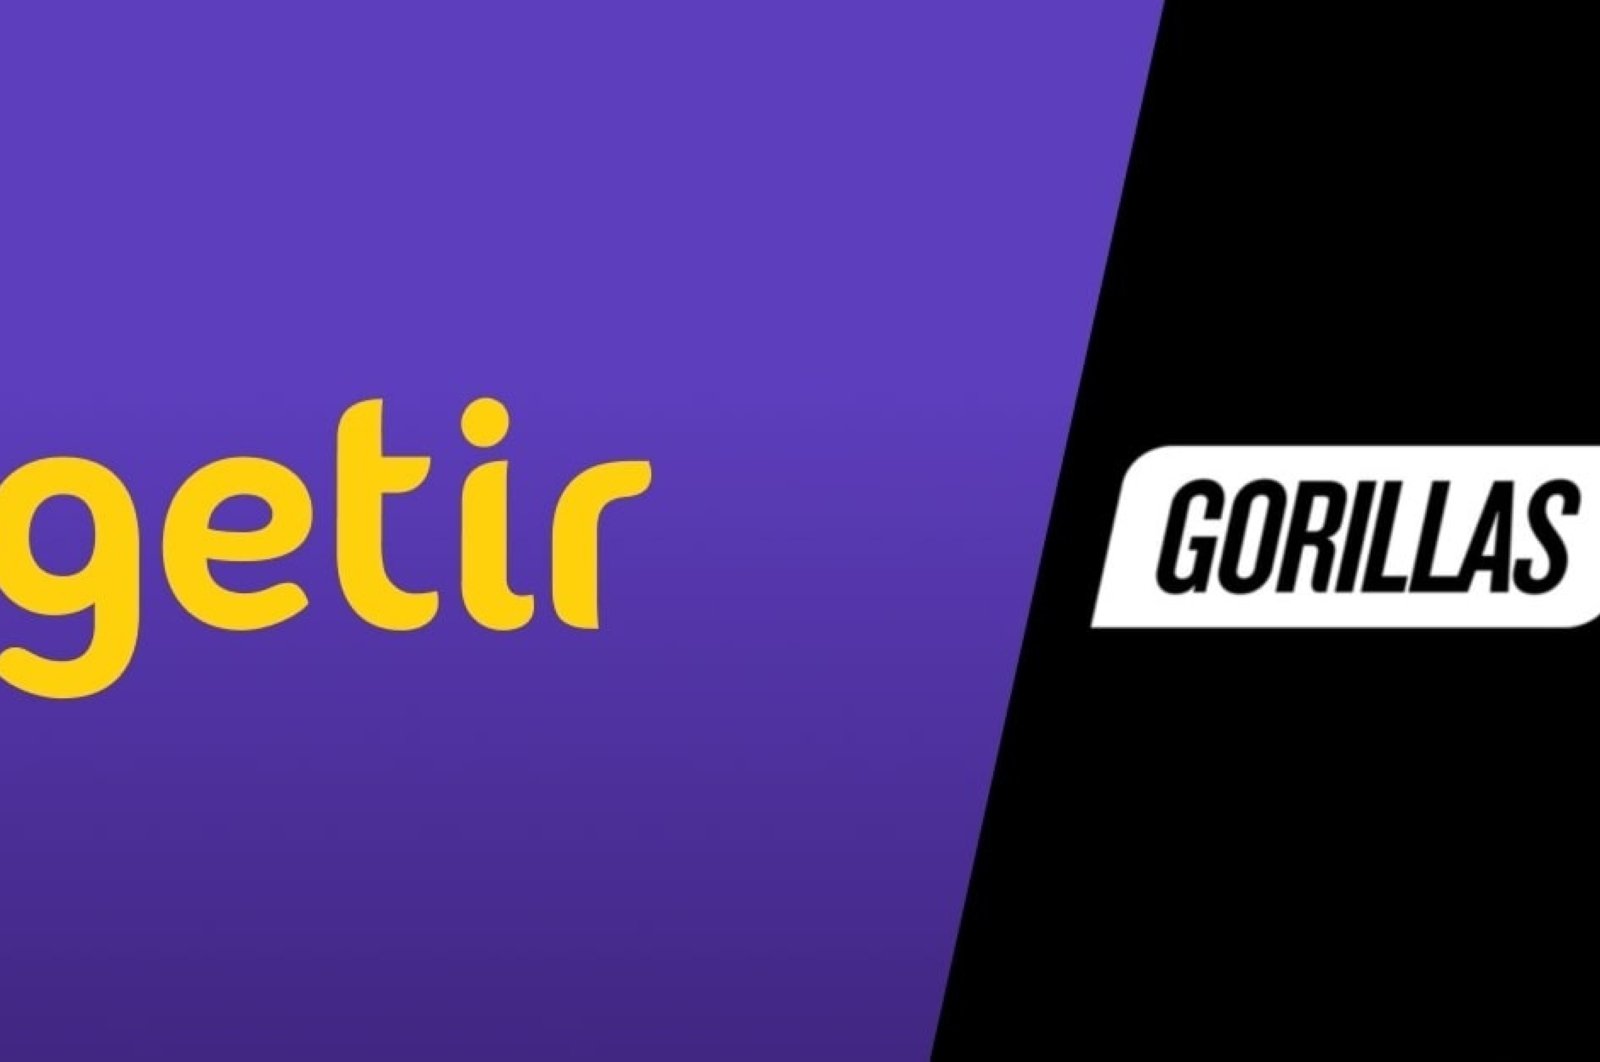 Aplikasi pengiriman Turki Getir membeli saingannya dari Jerman Gorila dalam kesepakatan ,2 miliar